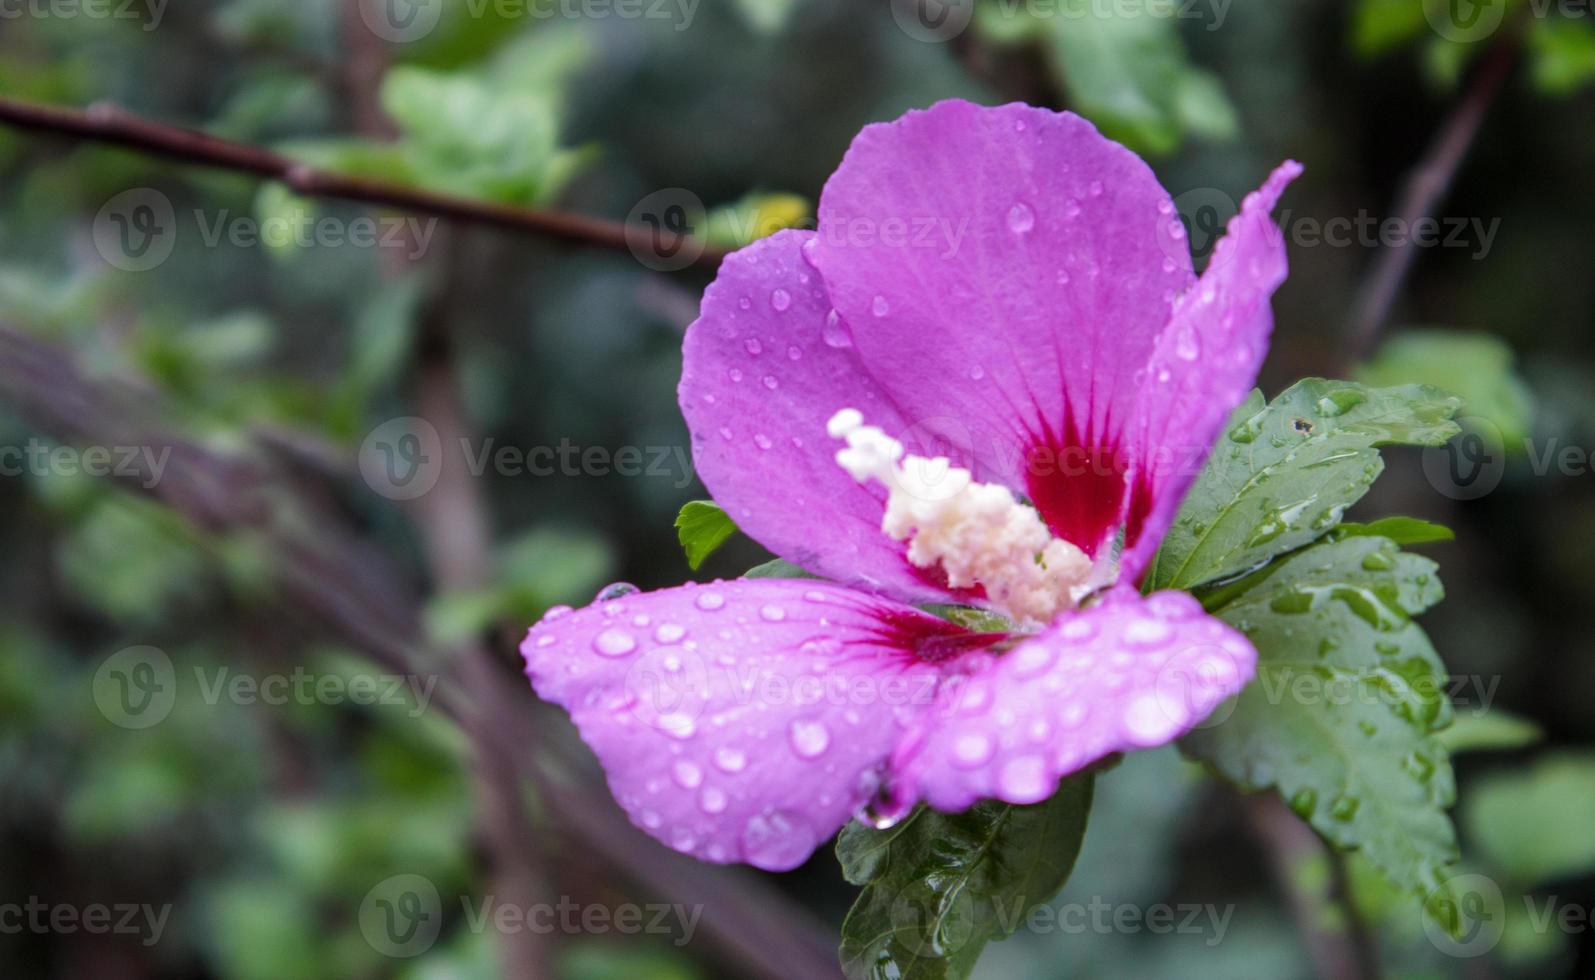 flores de cetmia siria, hibiscus syriacus. Planta ornamental de hibisco sirio, flores de color púrpura púrpura en el jardín con gotas de lluvia o ross de la mañana en tortas y hojas. fondo floral. foto